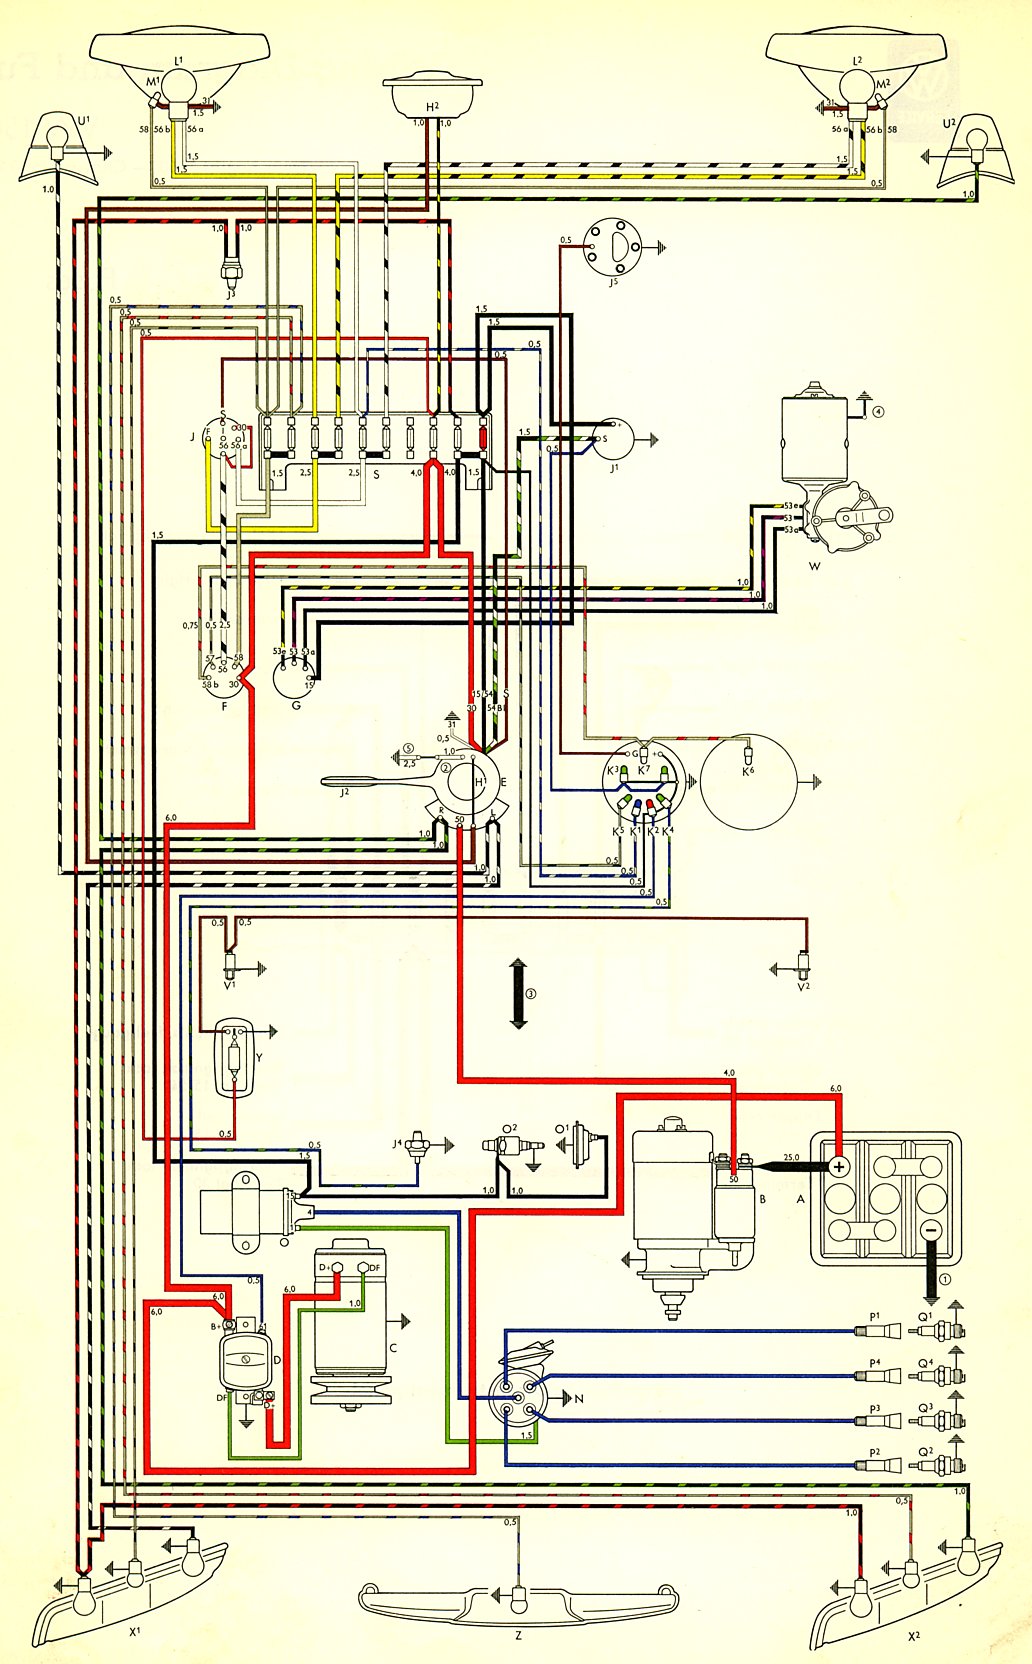 Avital 4105 Wiring Diagram